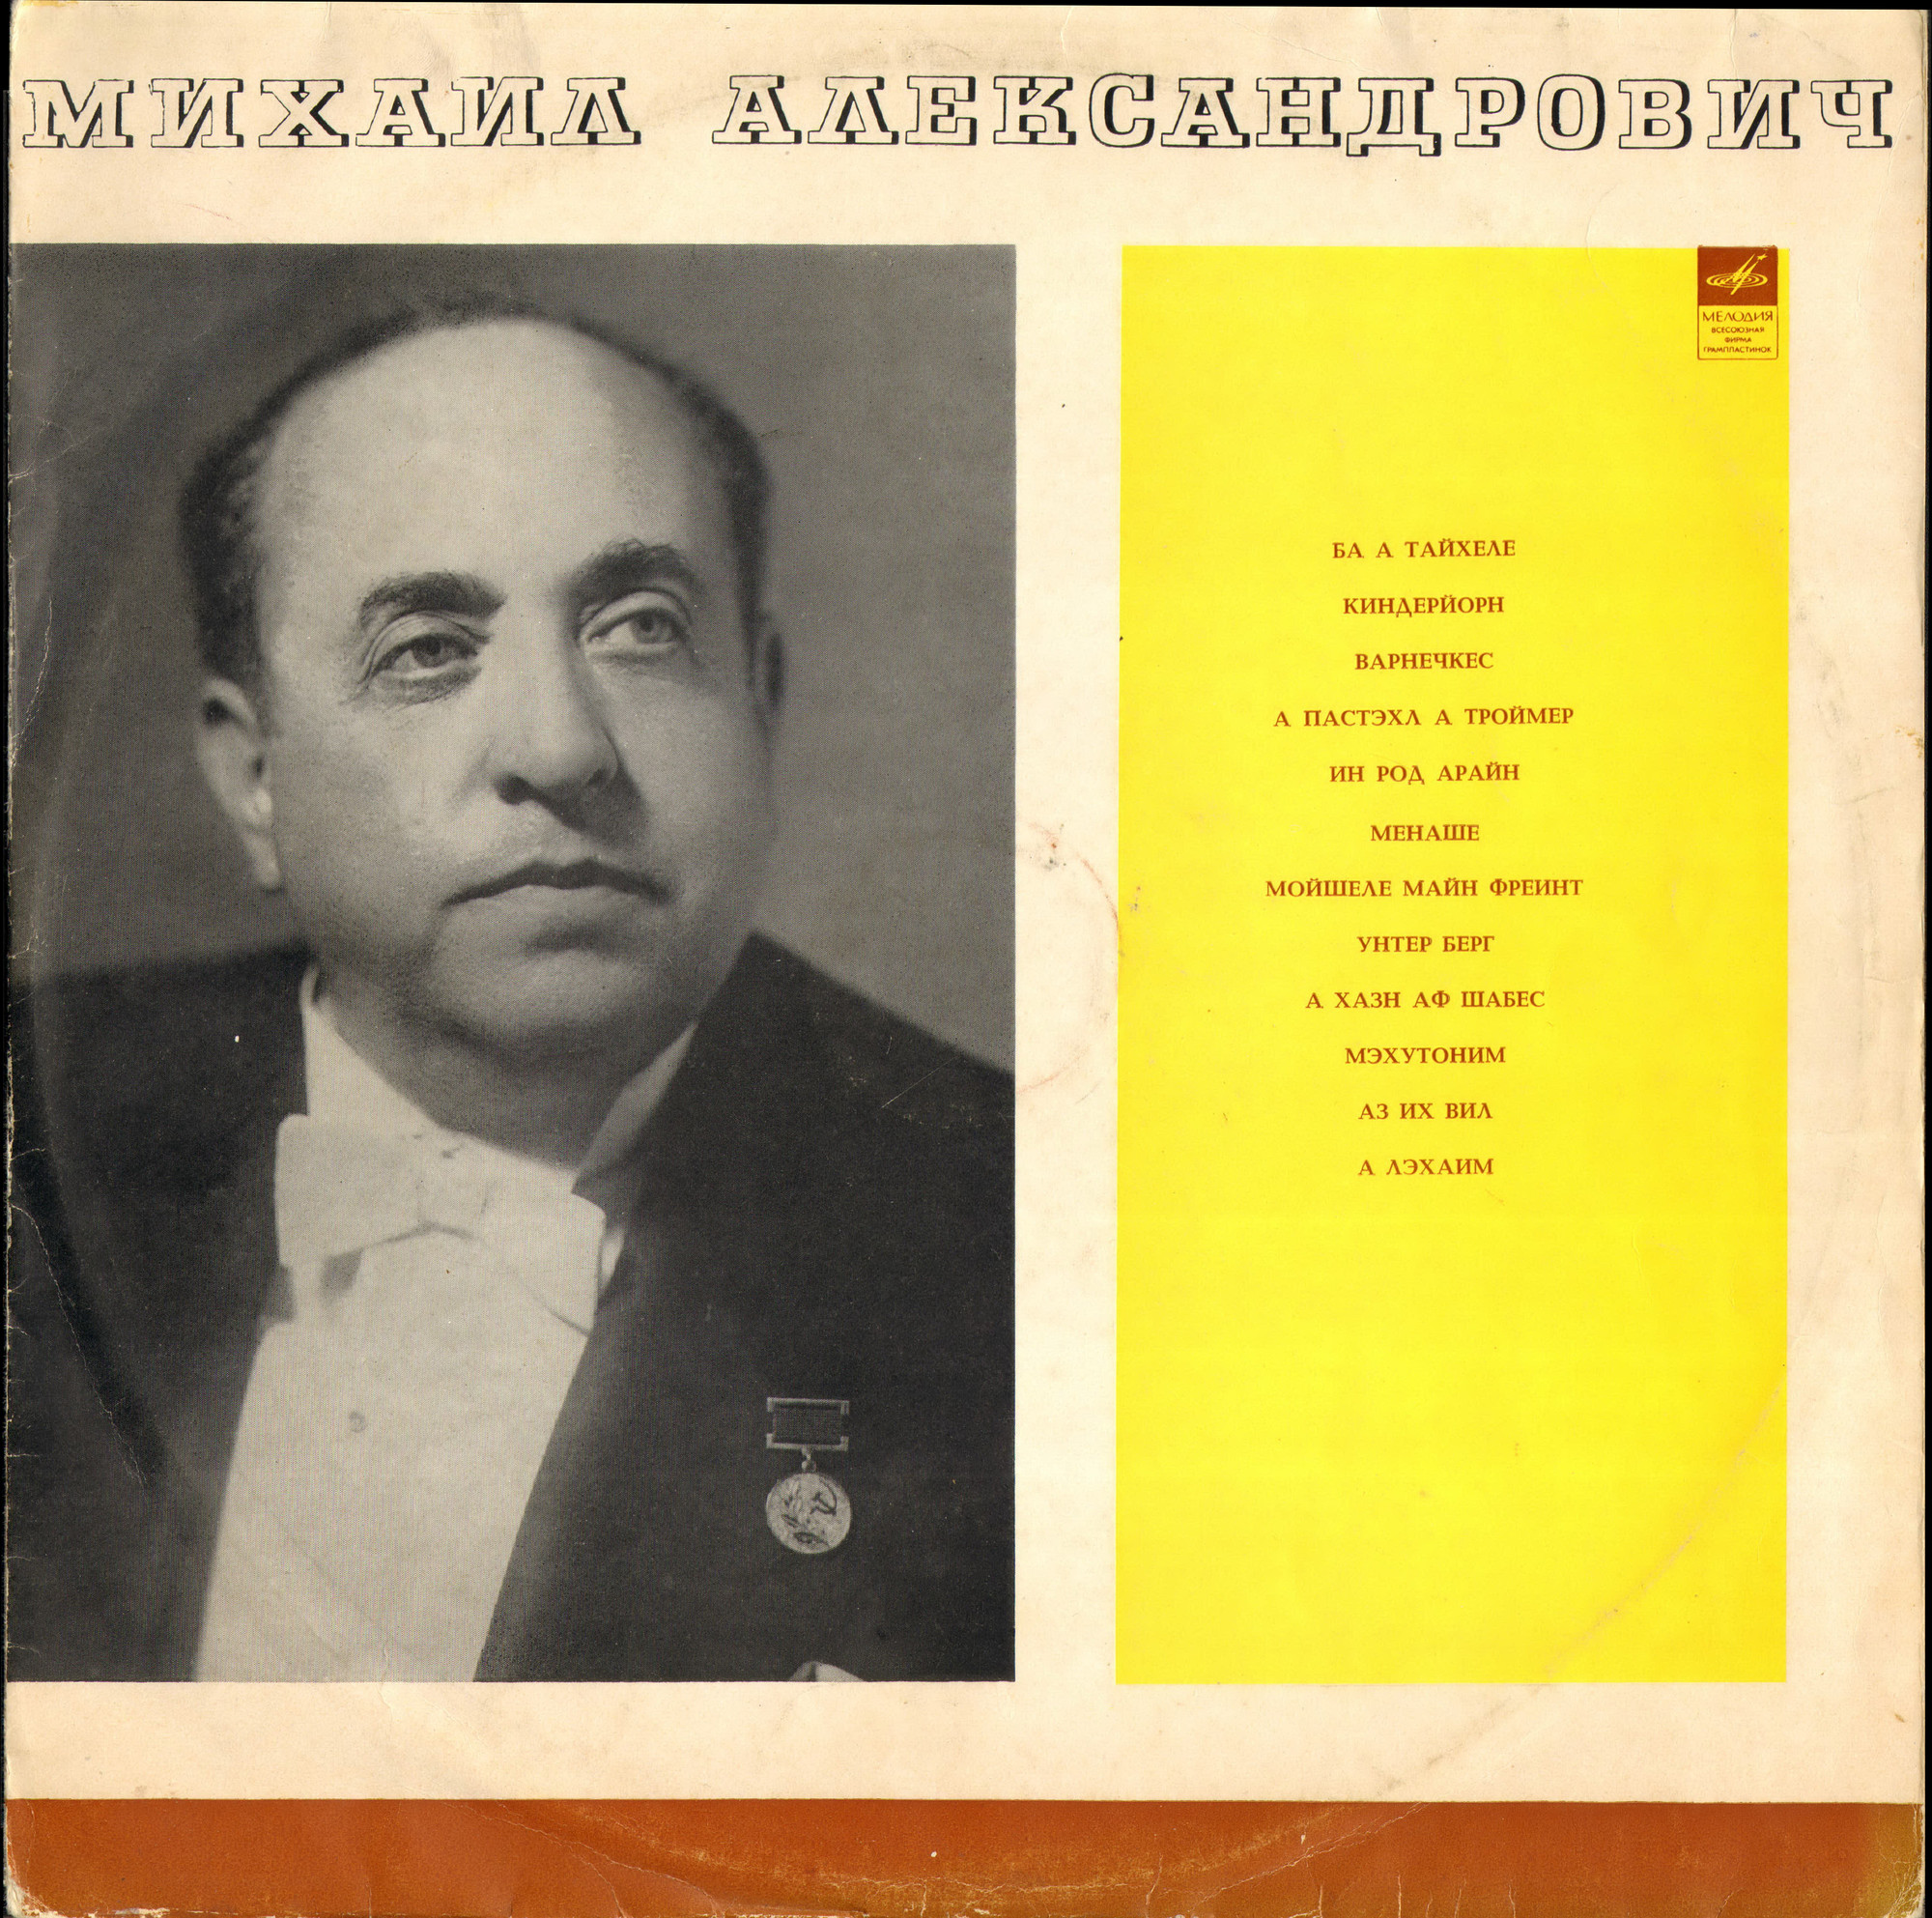 Михаил Александрович — Еврейские народные песни